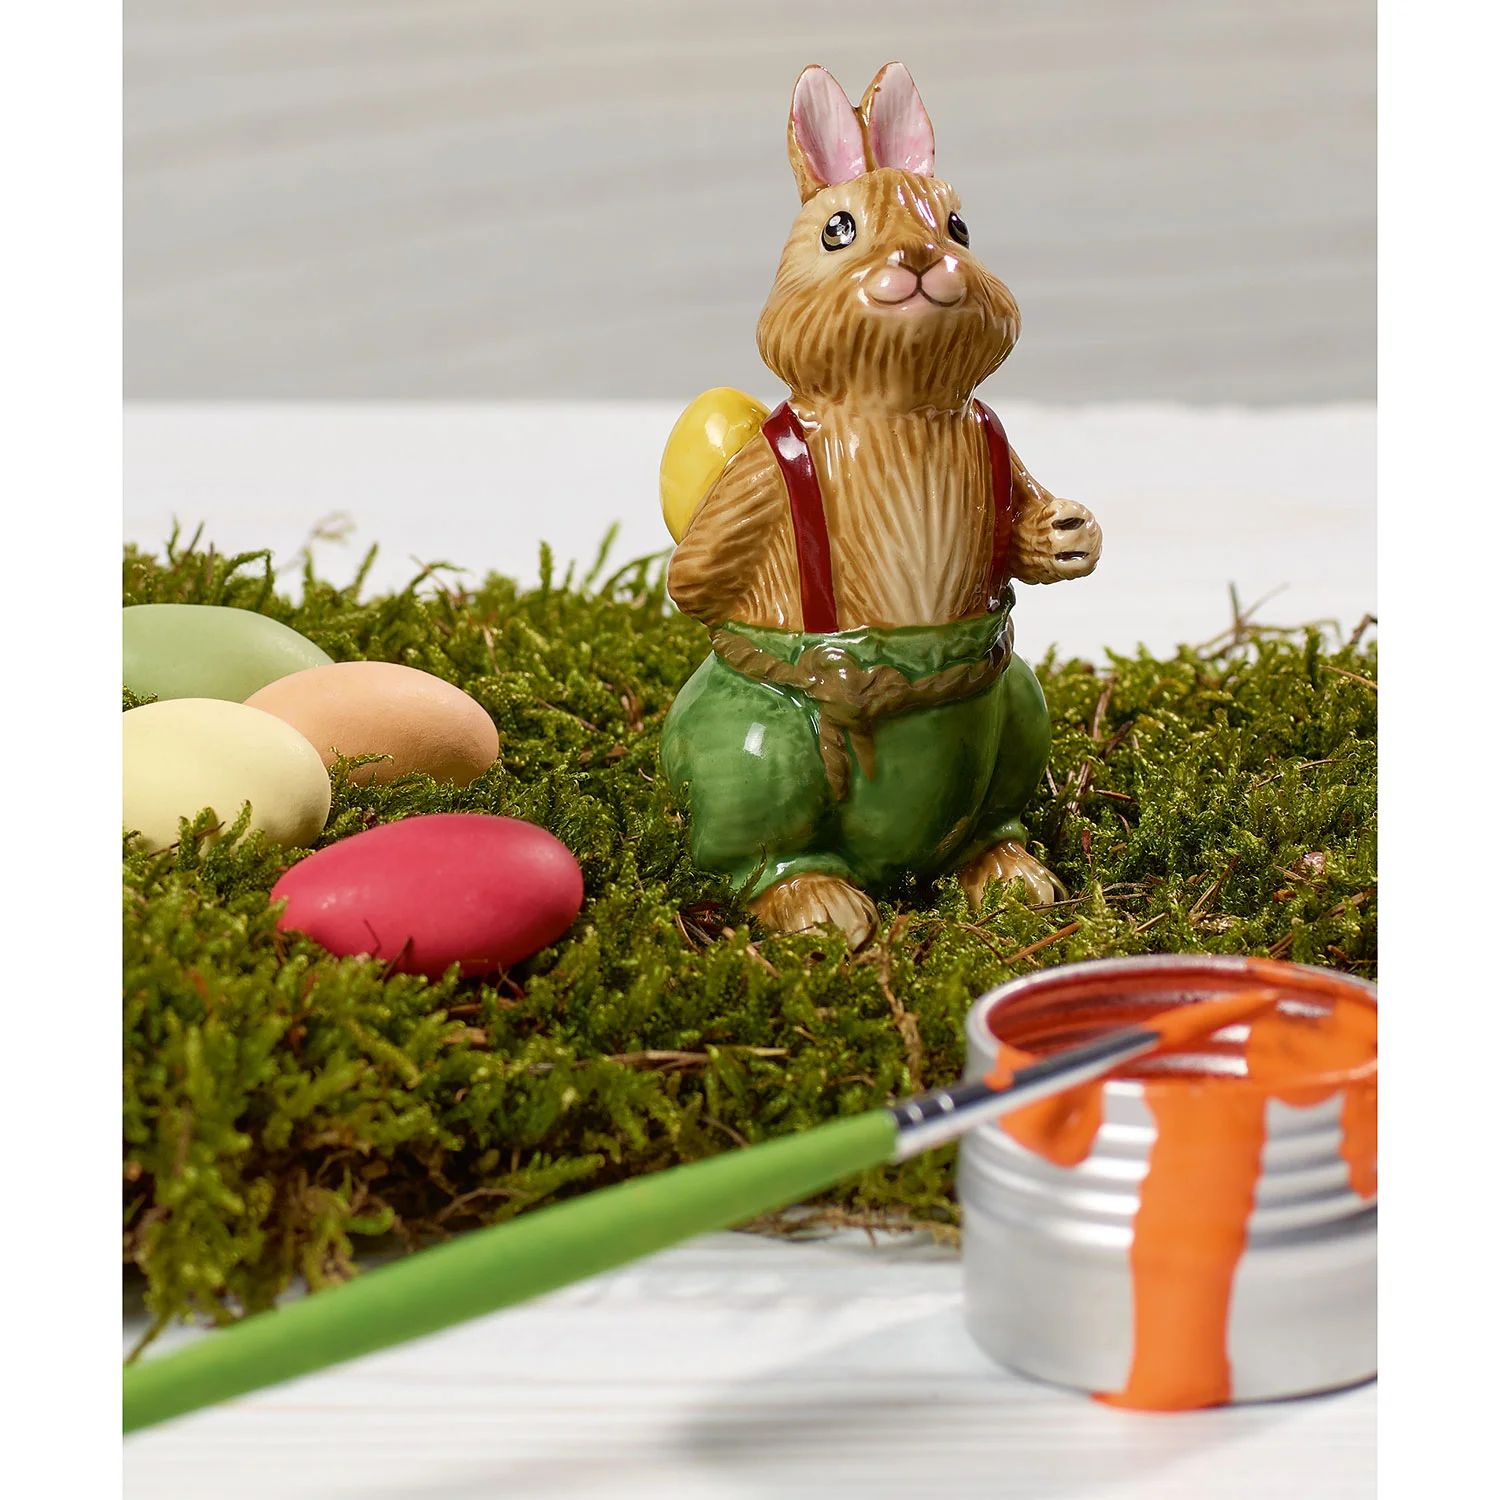 Bunny Tales Декоративная фигурка "Пасхальный кролик Пол" 8 см